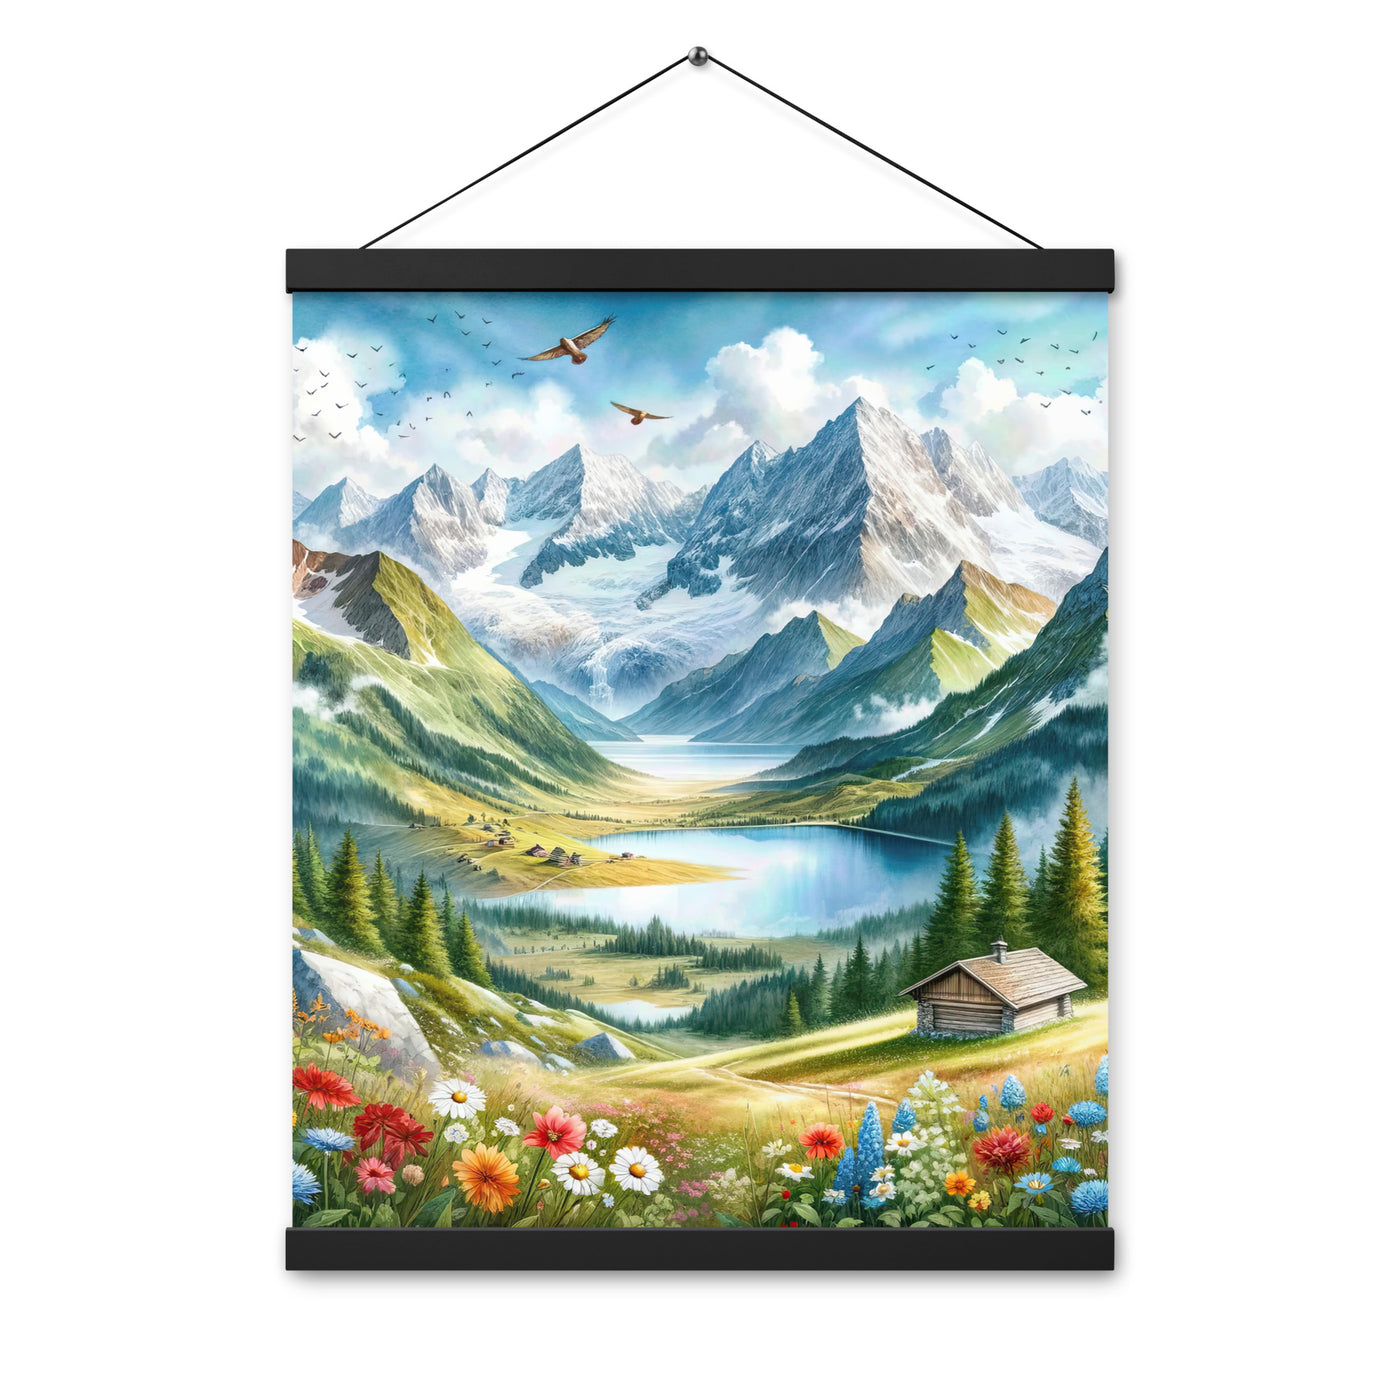 Quadratisches Aquarell der Alpen, Berge mit schneebedeckten Spitzen - Premium Poster mit Aufhängung berge xxx yyy zzz 40.6 x 50.8 cm